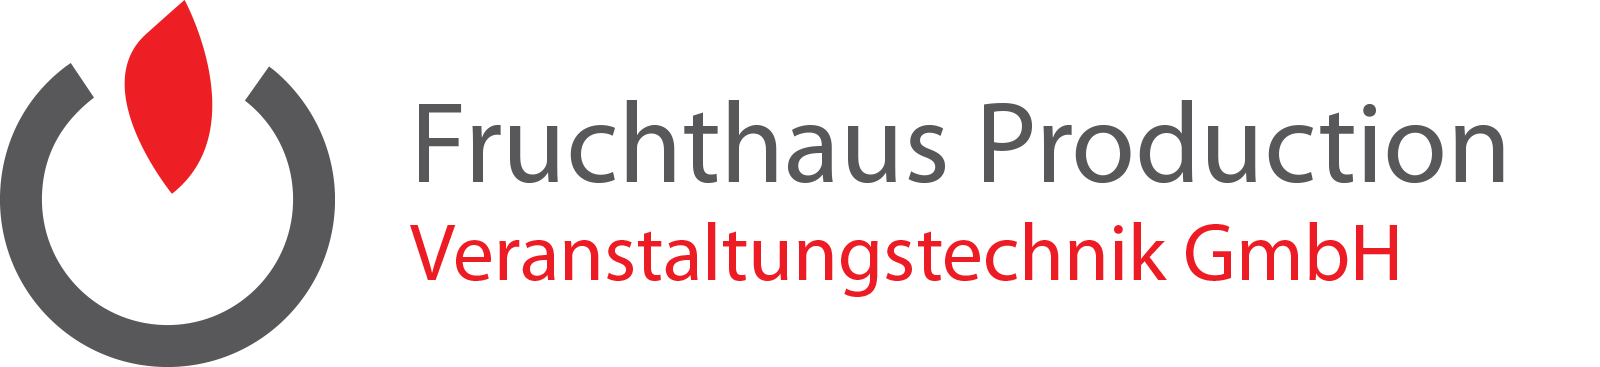 Fruchthaus Production Veranstaltungstechnik GmbH